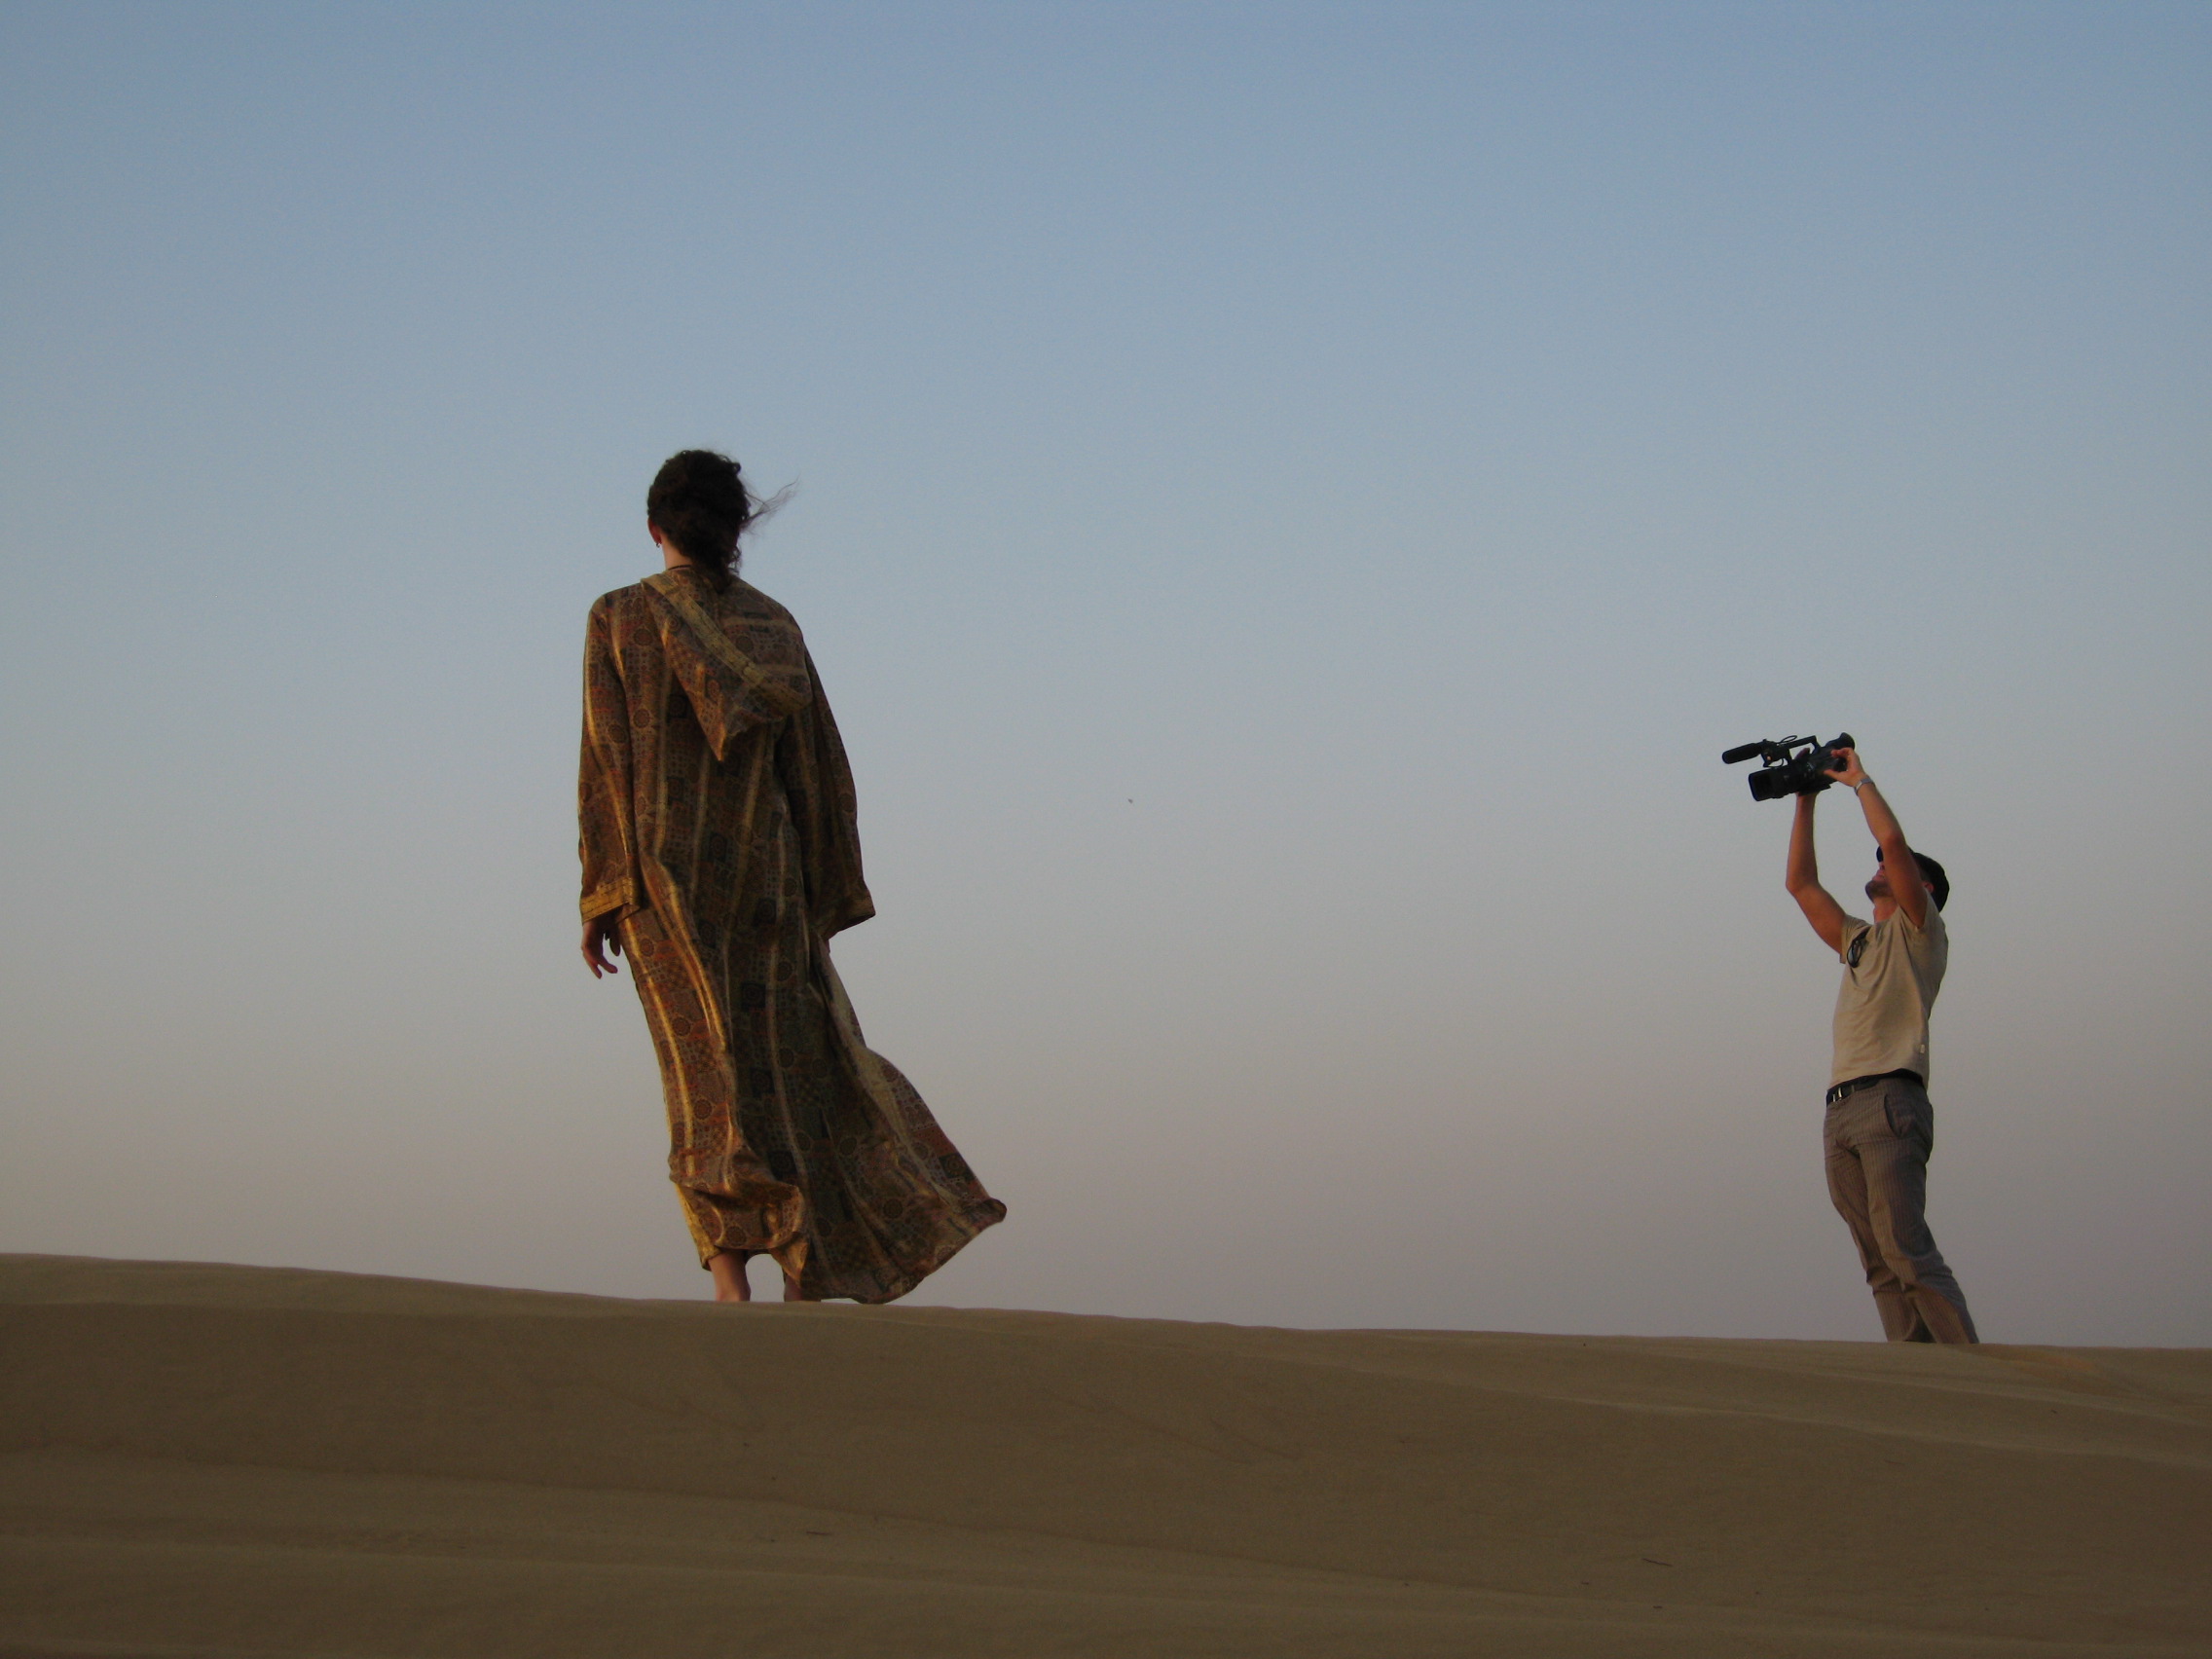 Shooting in the desert